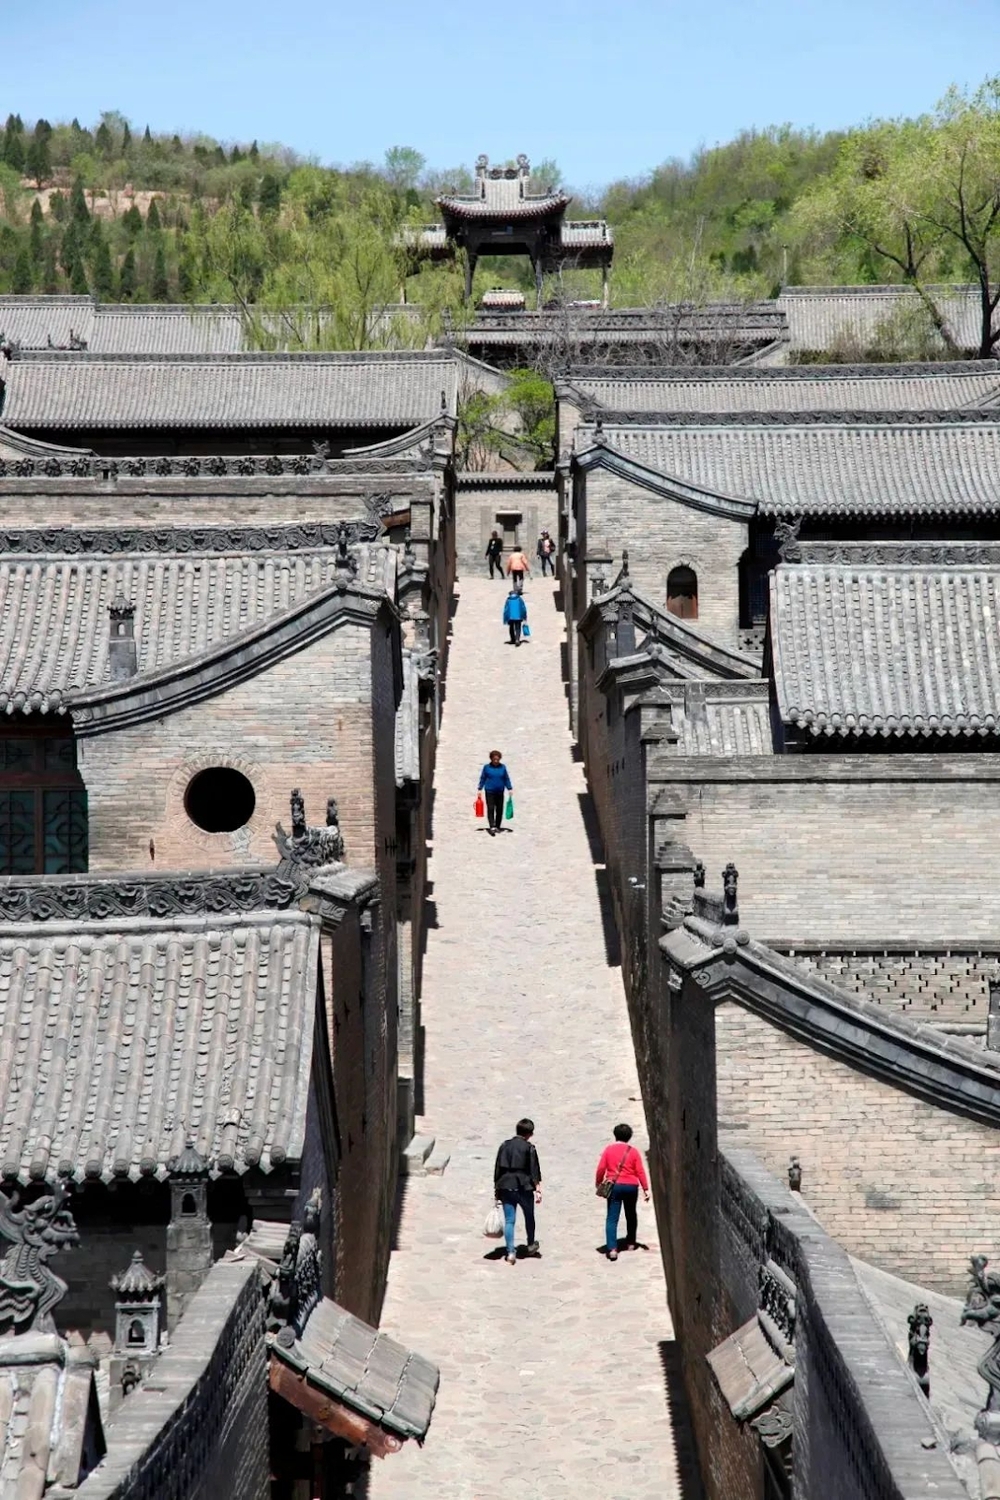 Khuôn viên tư gia lớn nhất Trung Quốc: 300 năm mới hoàn thành, “rộng” hơn Tử Cấm Thành 100.000m2, là nơi ở của gia tộc phồn vinh nhất một thời - Ảnh 5.